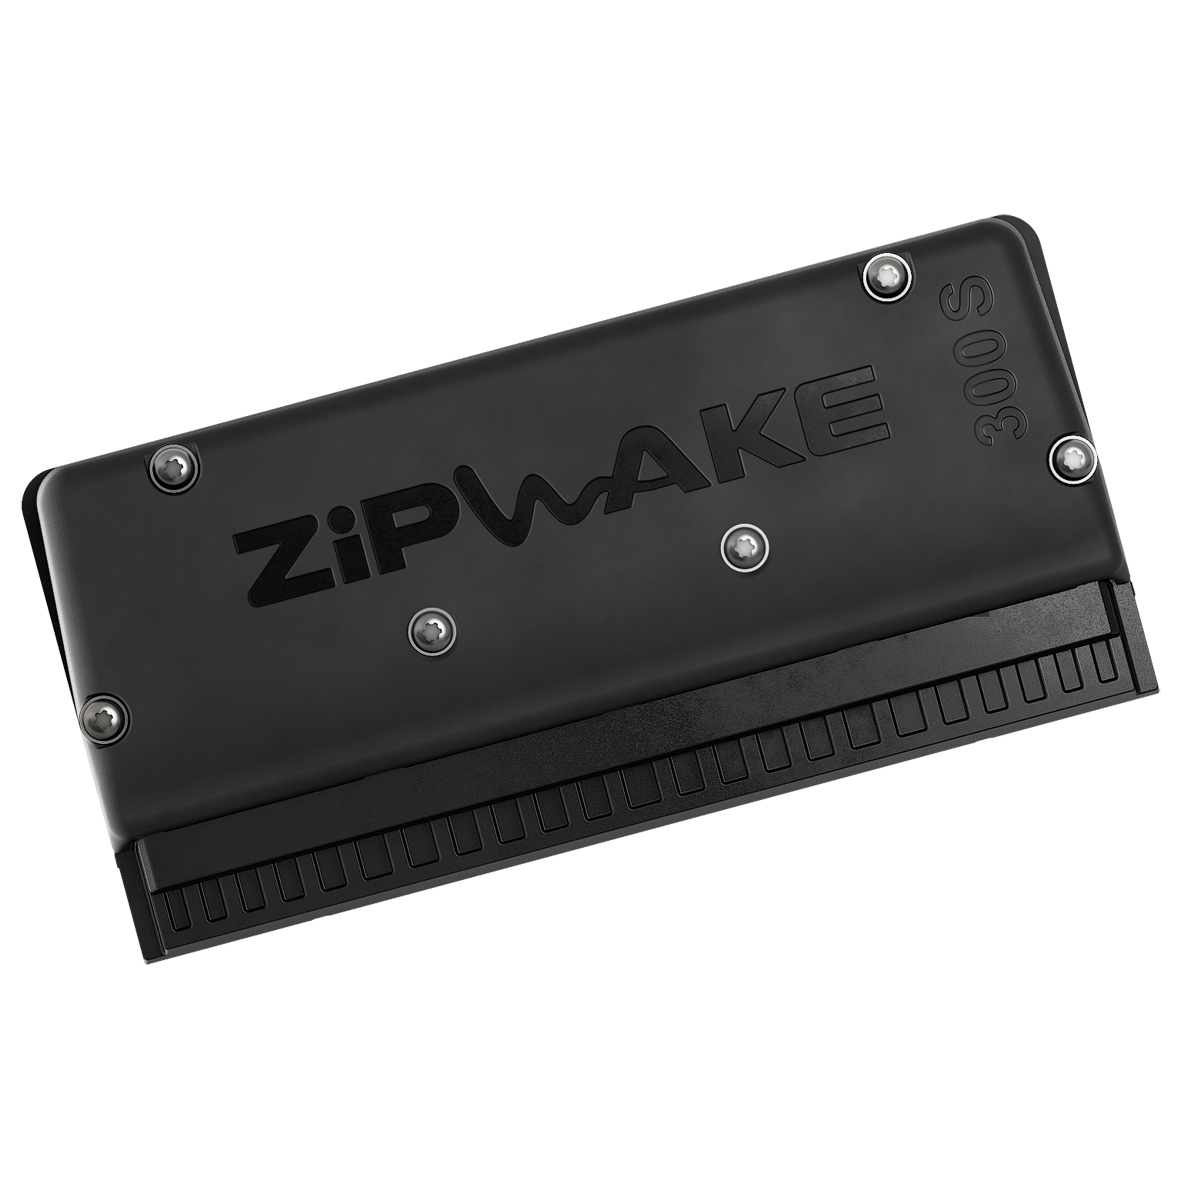 ZIPWAKE INTERCEPTOR 750 S